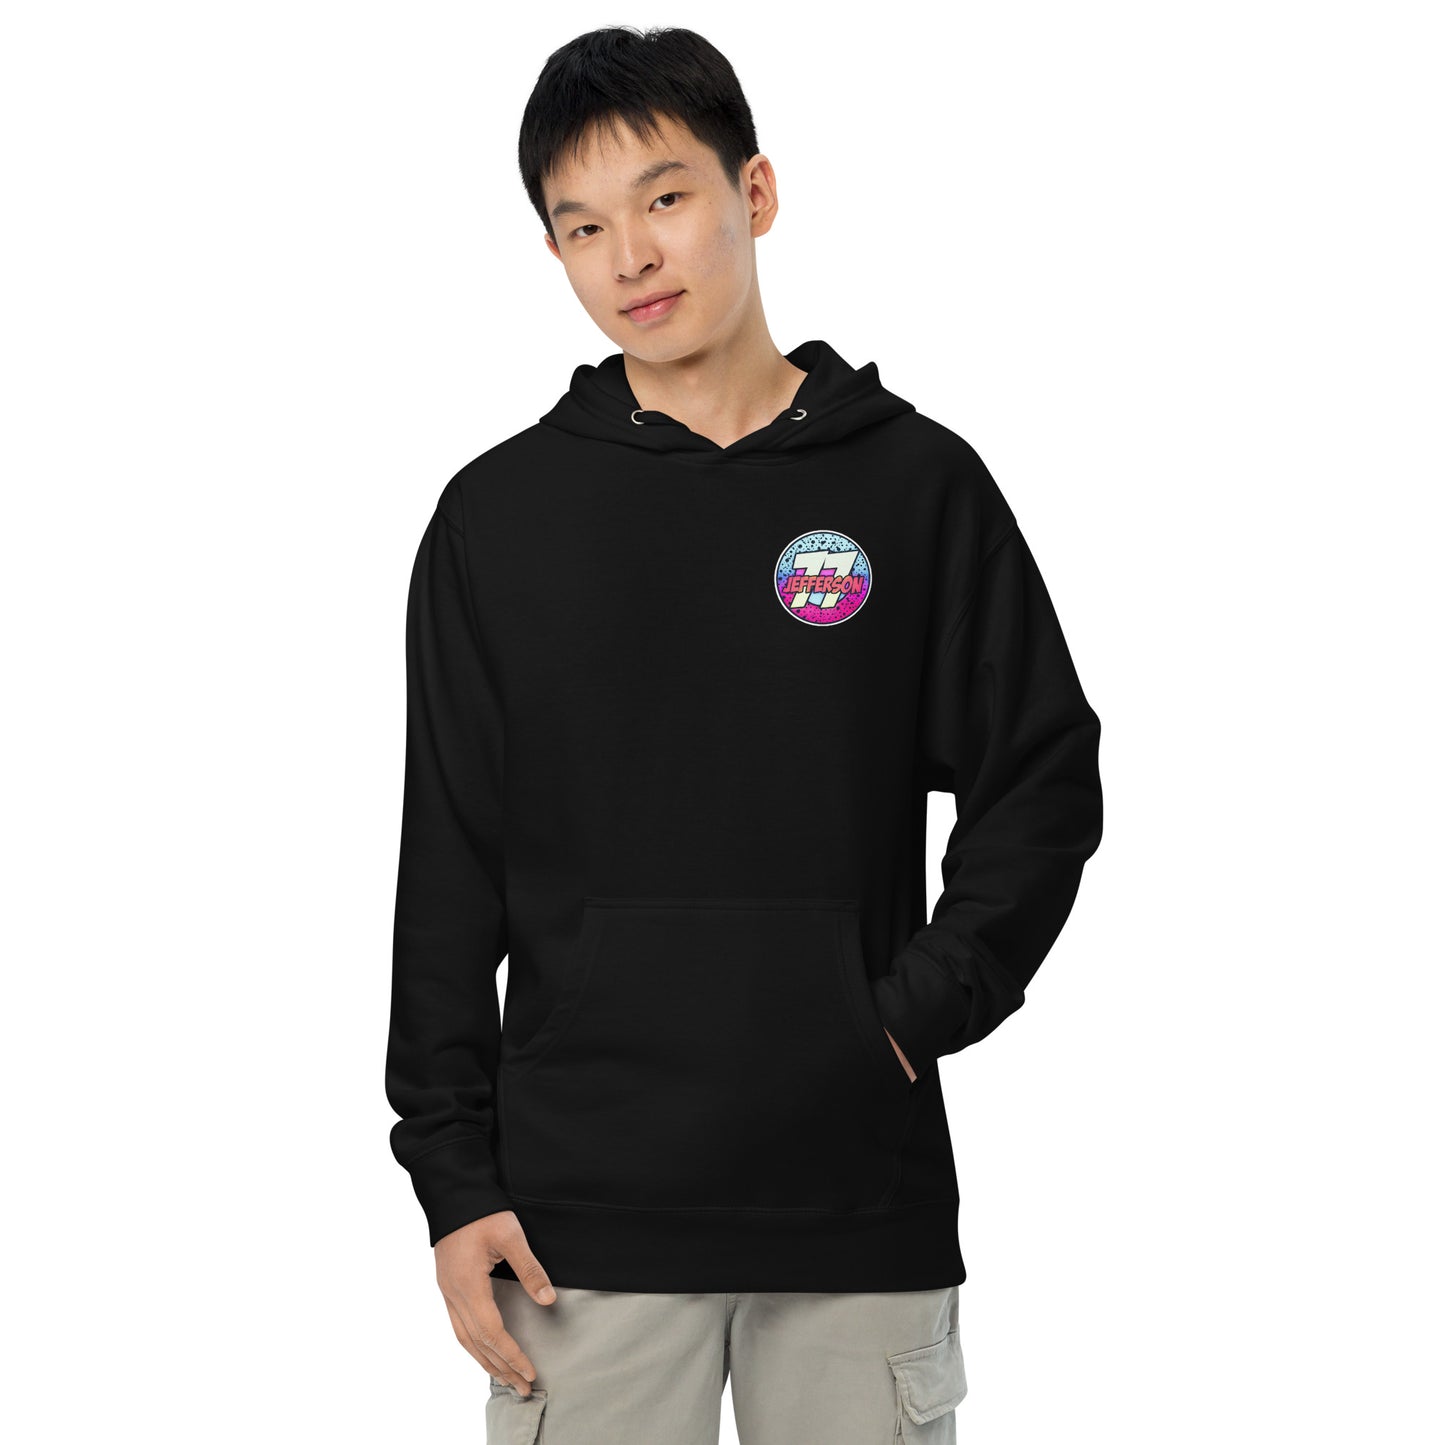 Neon - 77J - Unisex midweight hoodie